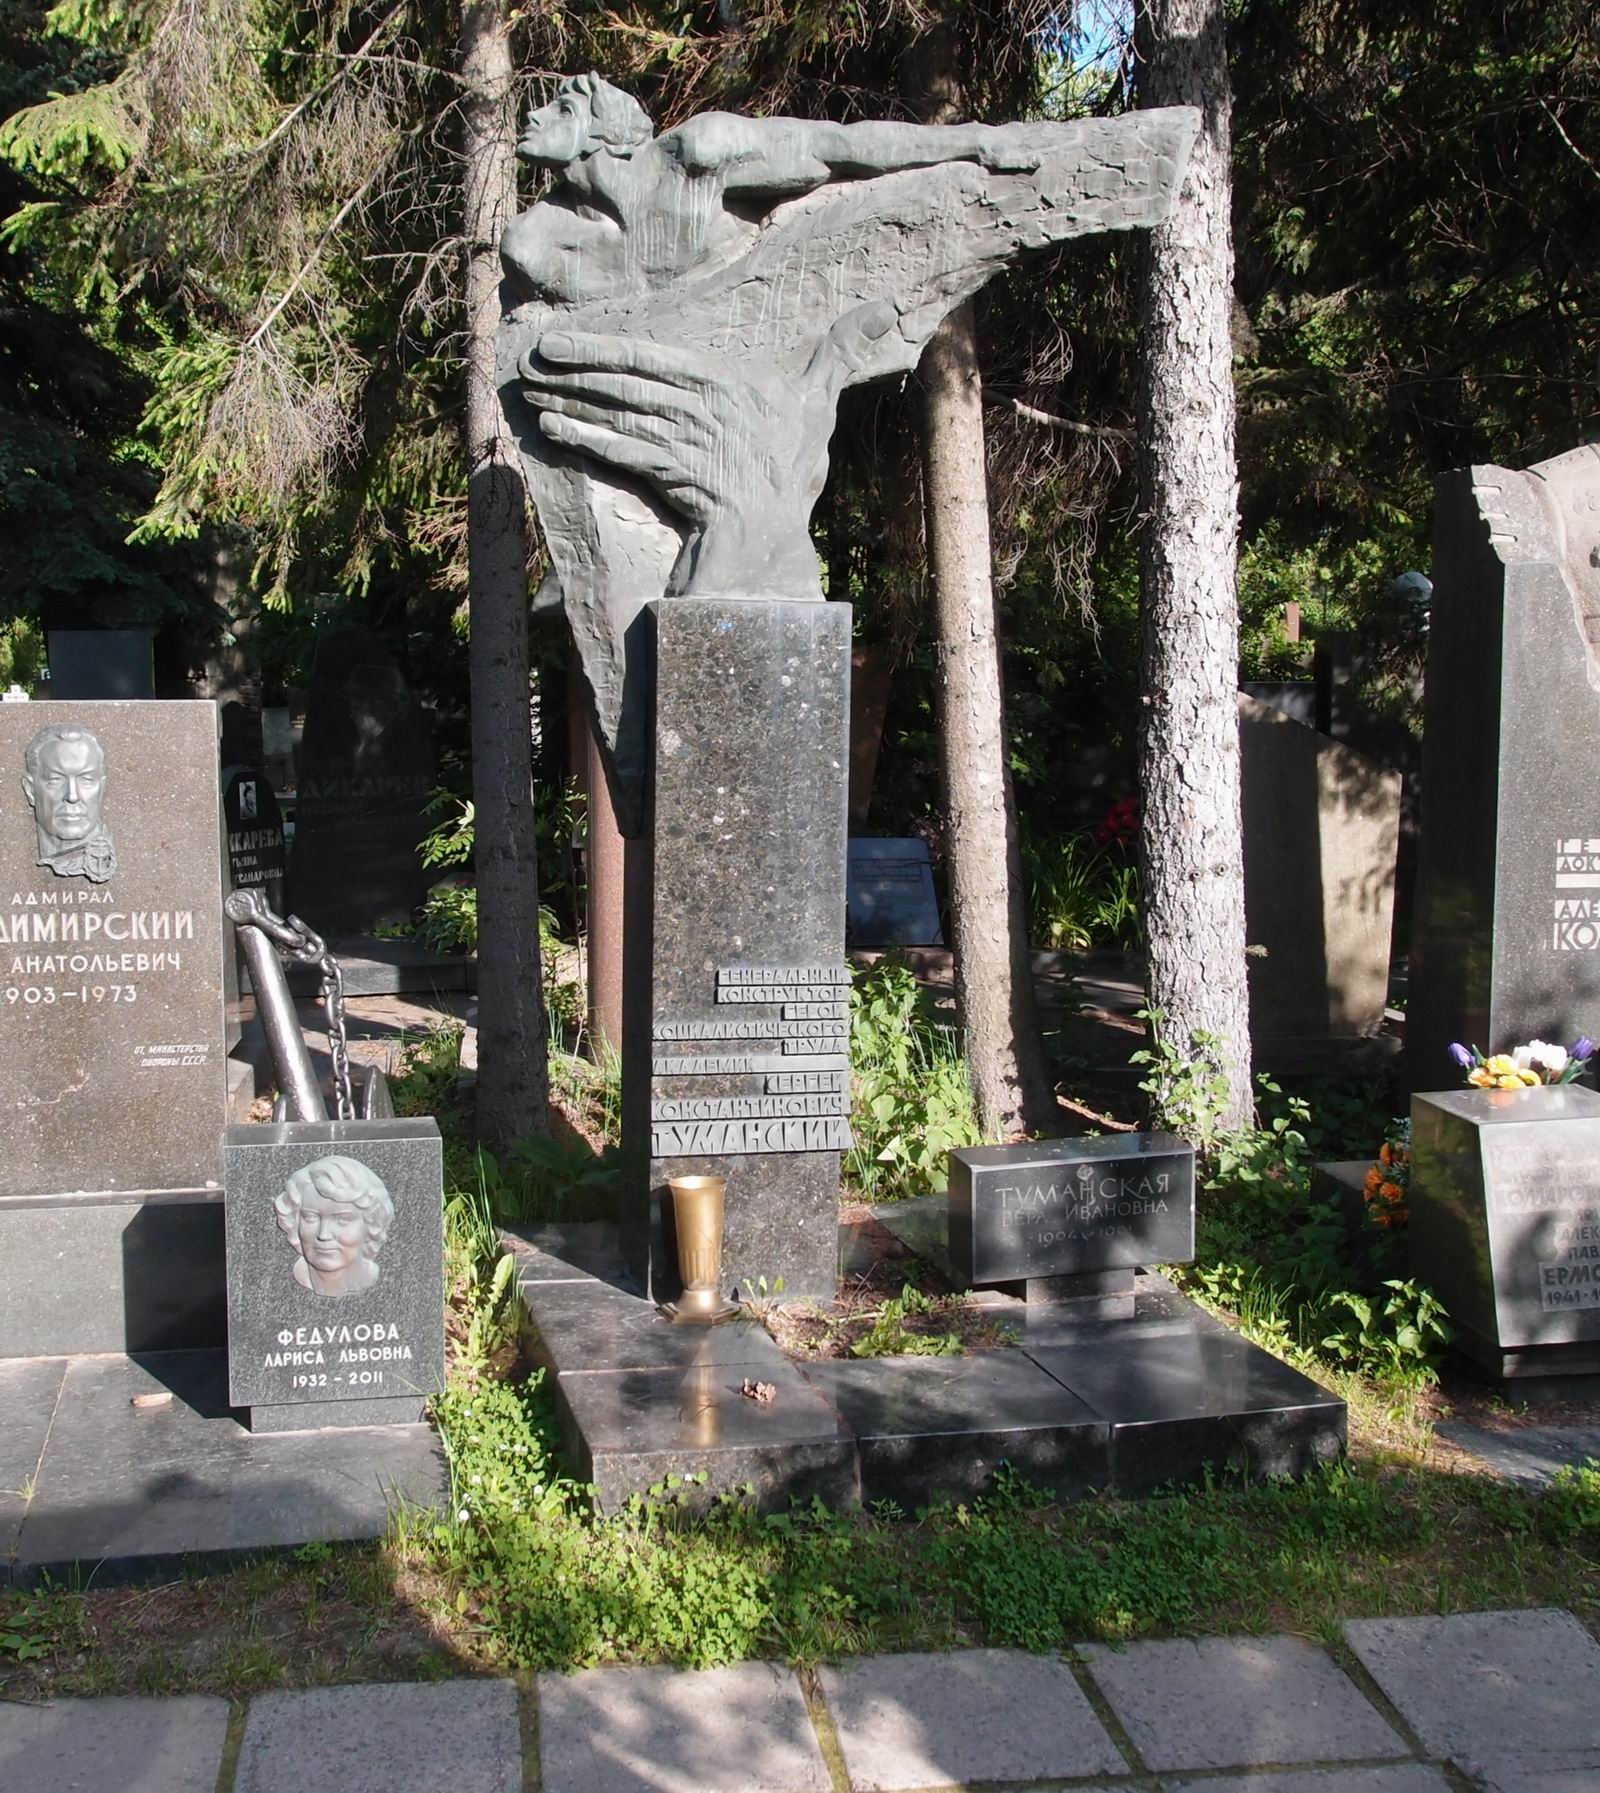 Памятник на могиле Туманского С.К. (1901–1973), ск. И.Васильев, арх. Ю.Воскресенский, на Новодевичьем кладбище (7–6–16).